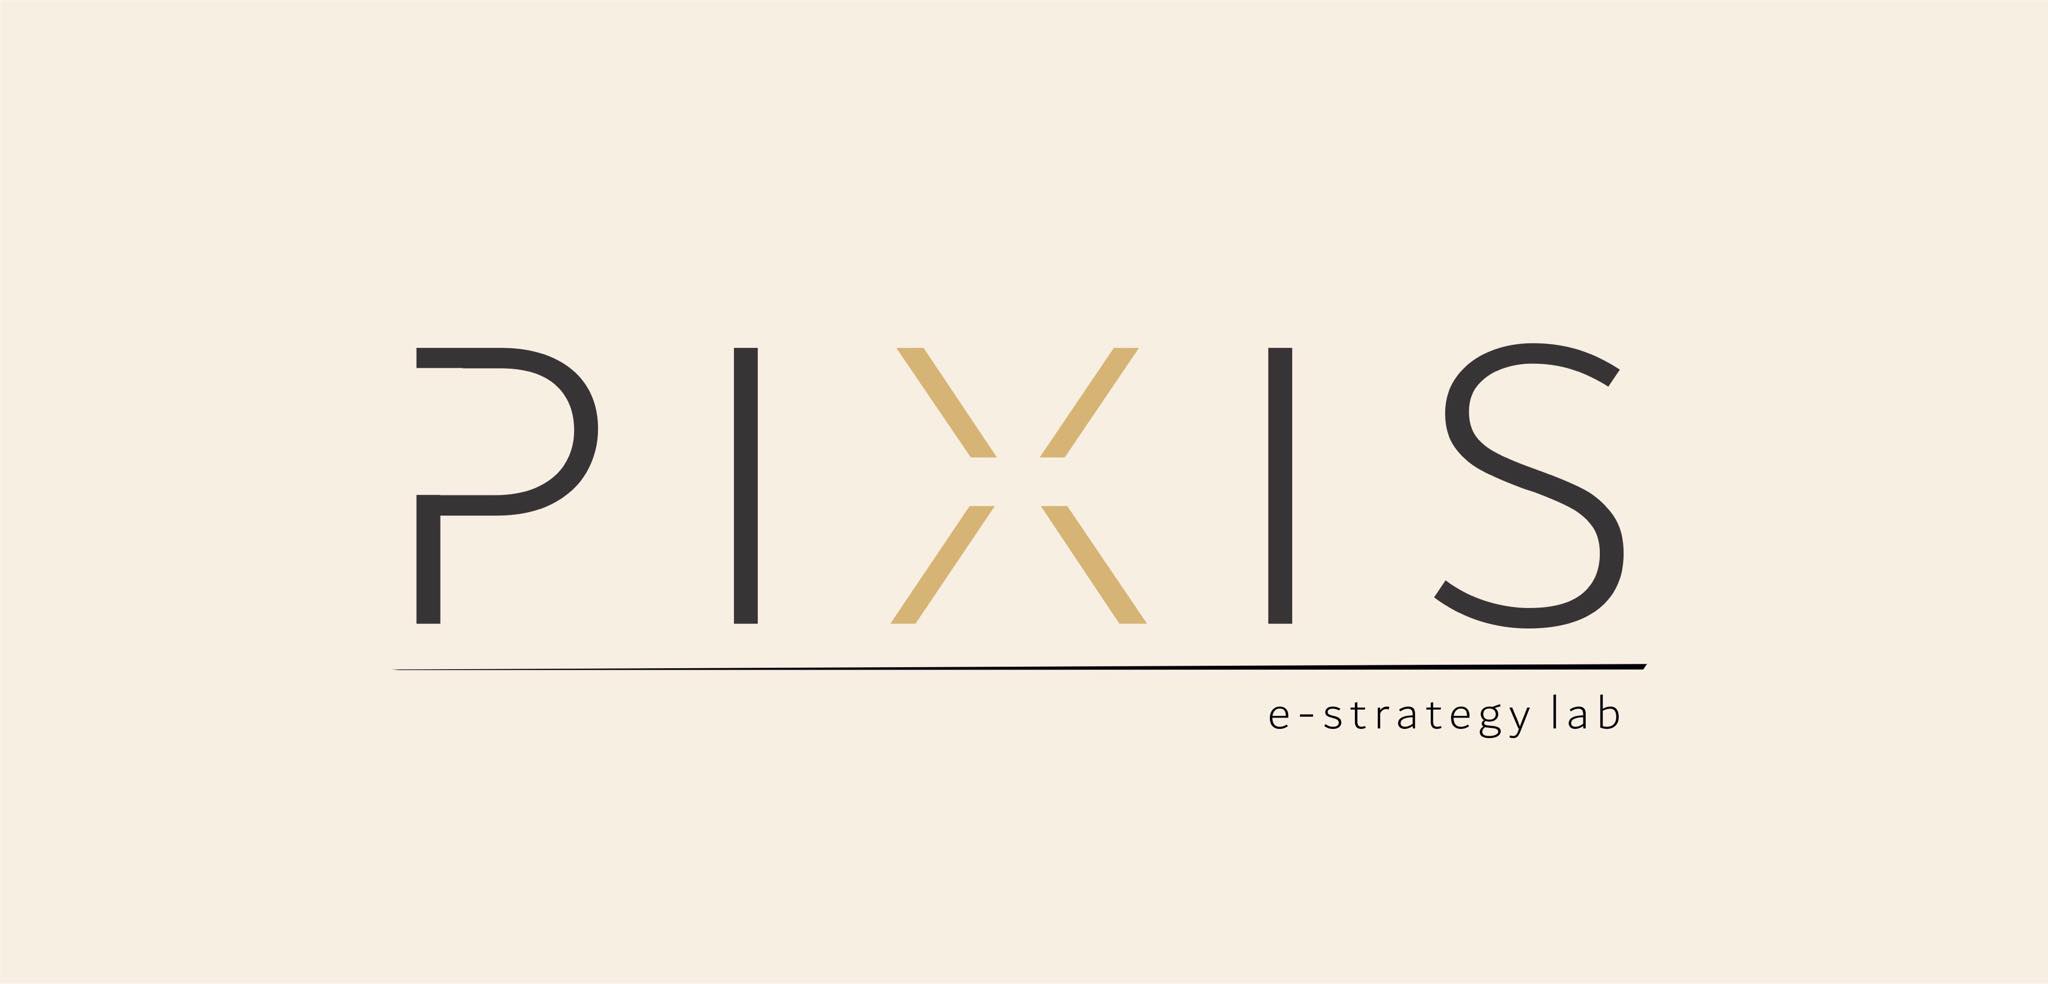 Pixis LLC